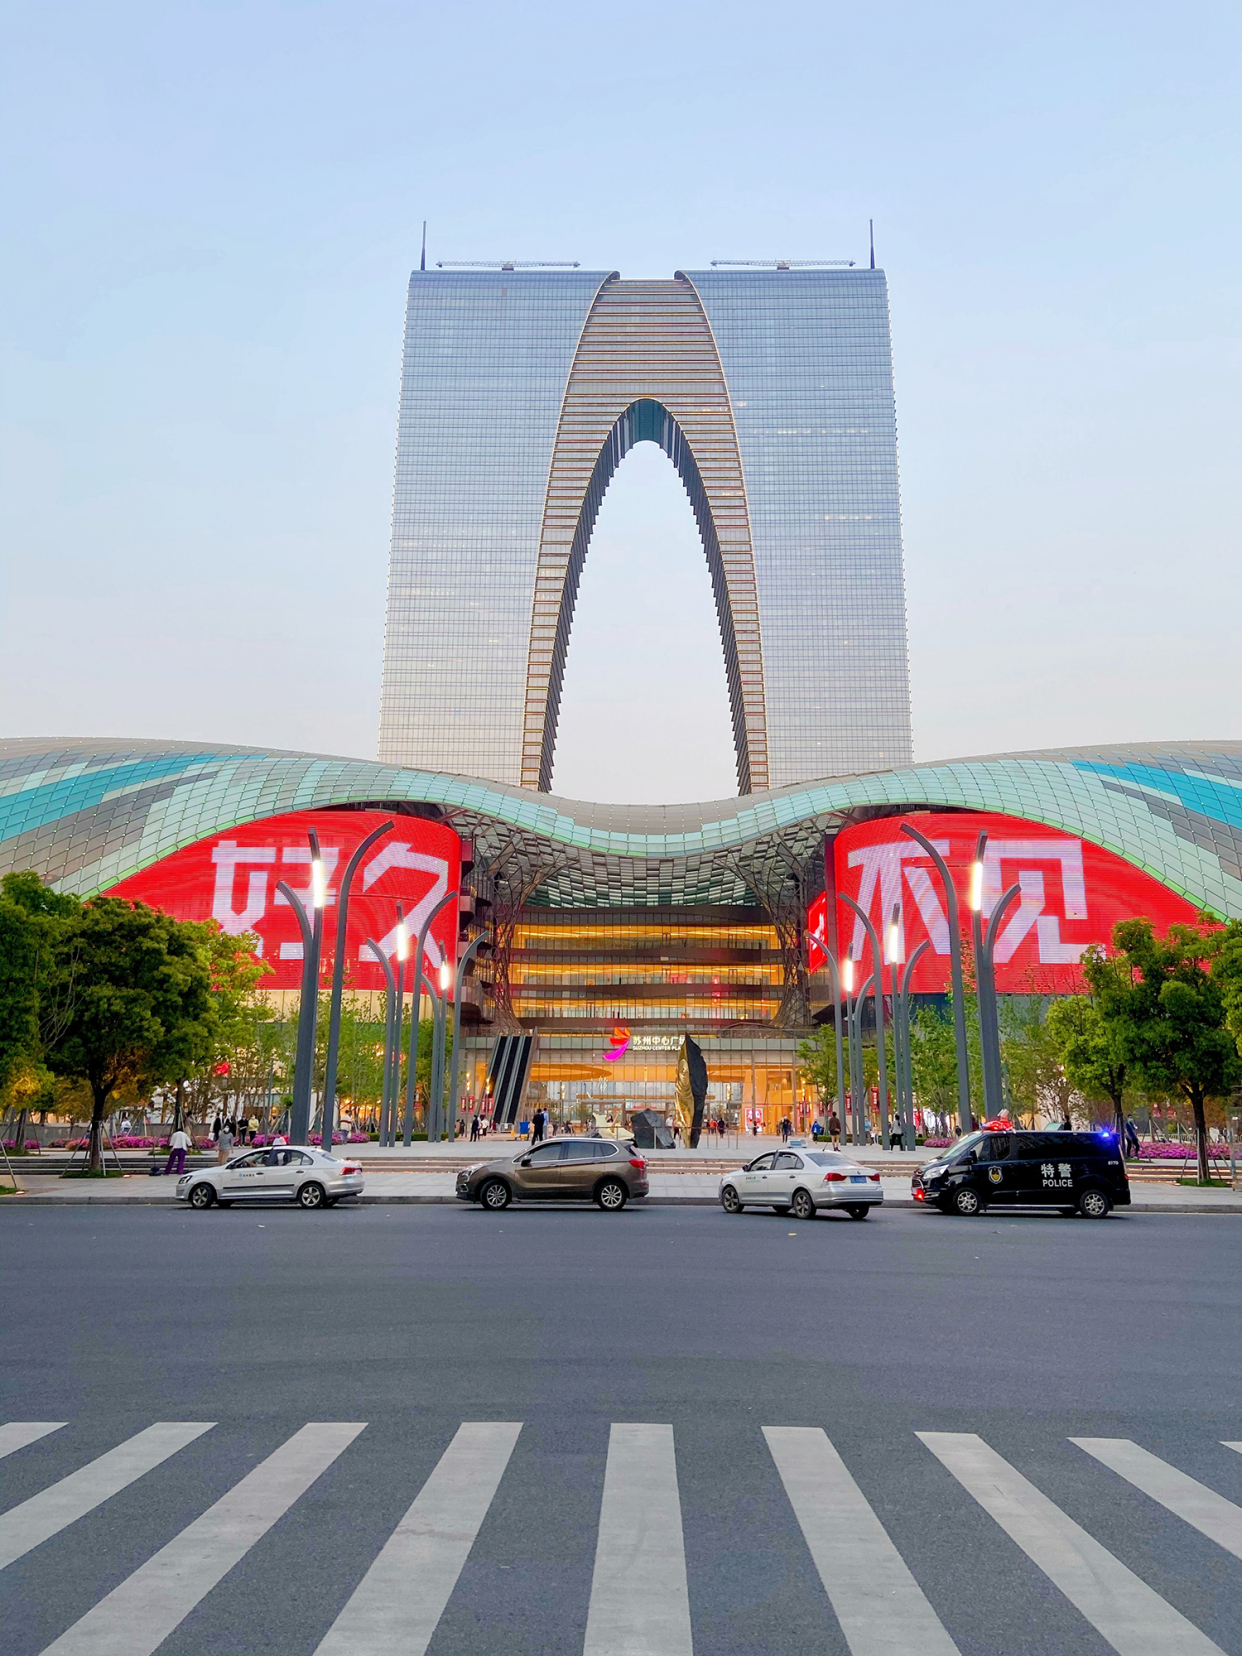 东方之门,苏州最著名的地标性建筑,为什么被调侃成"大秋裤"?